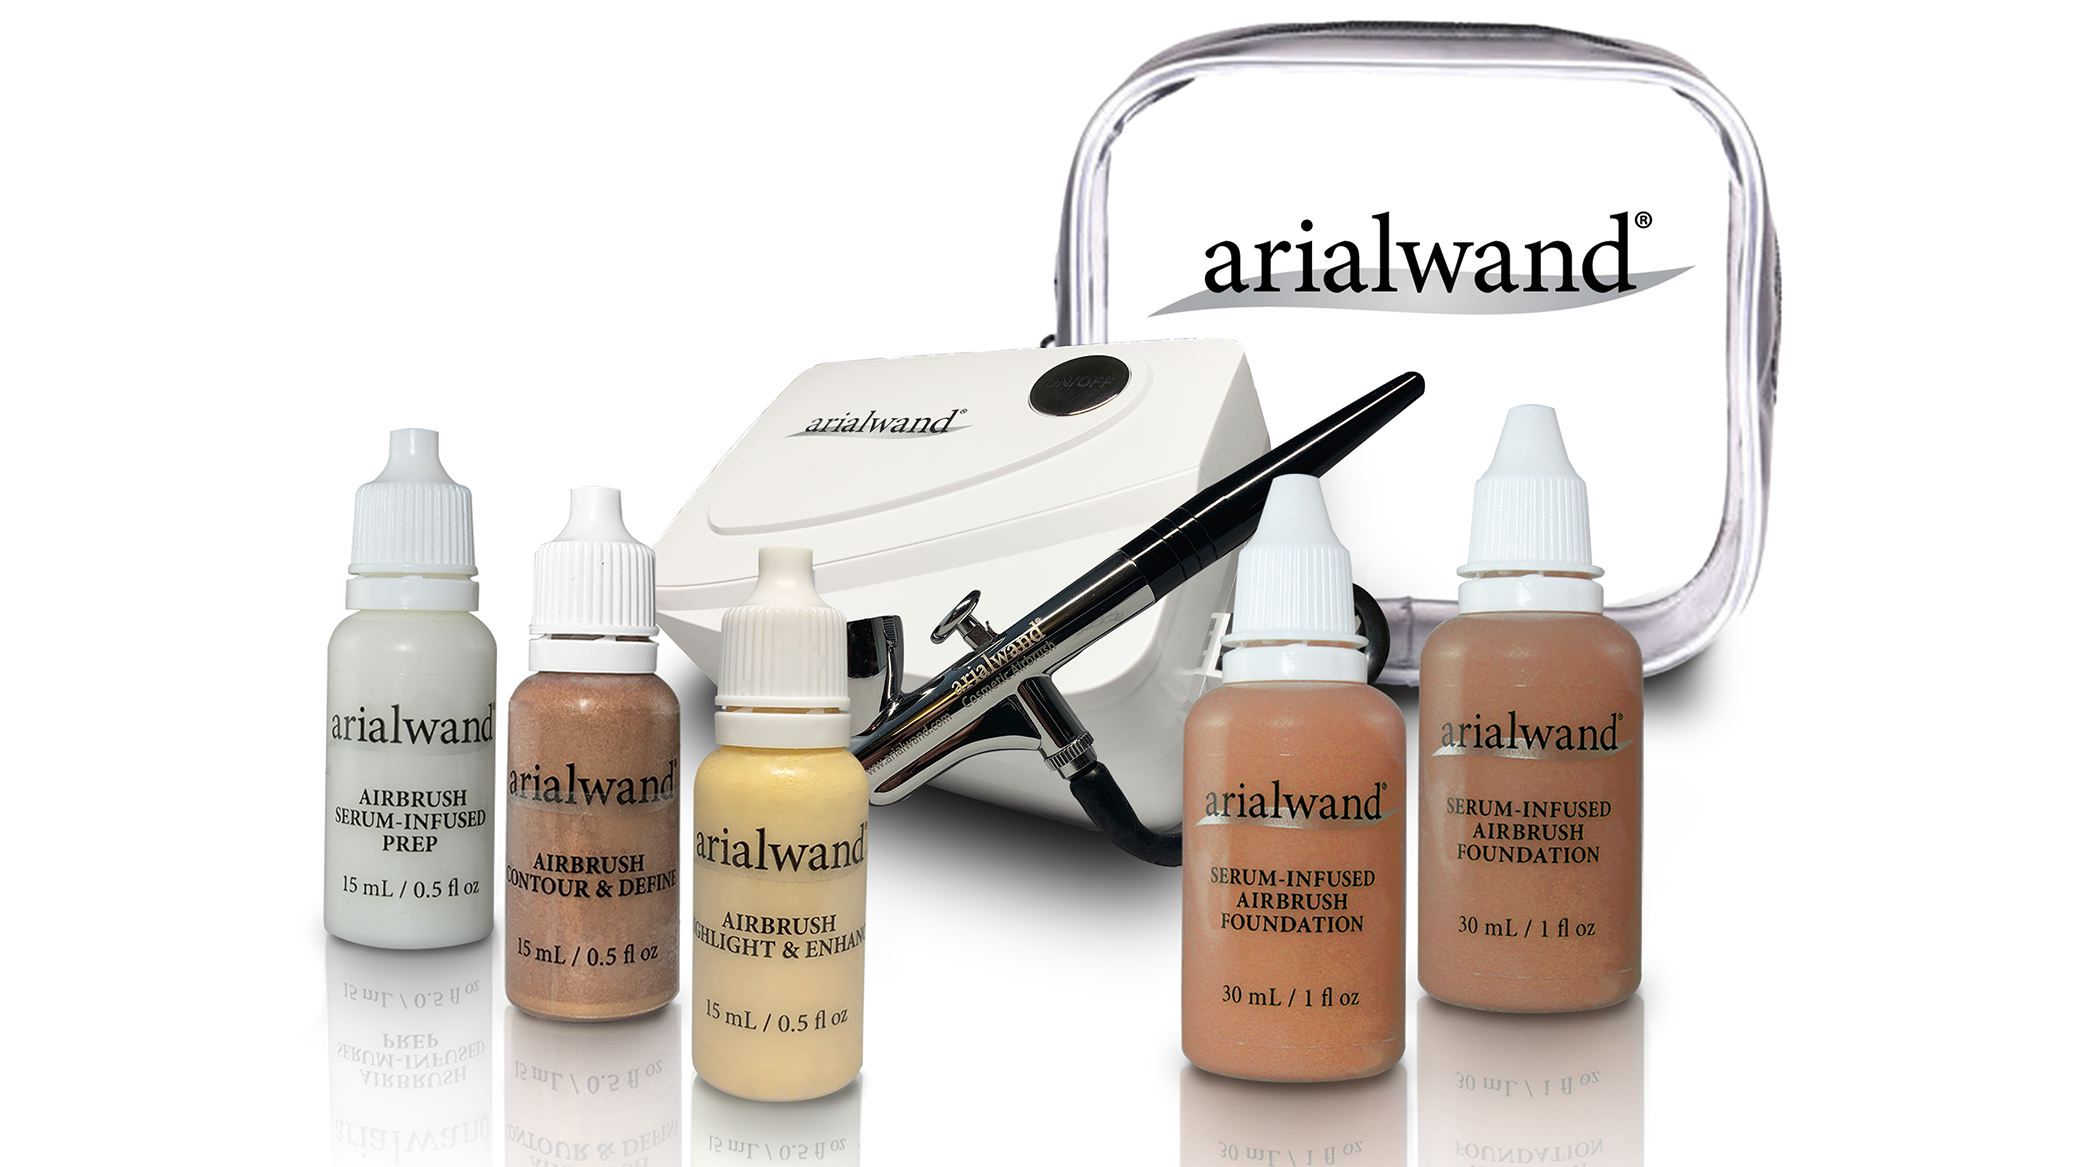 Arialwand airbrush makeup kit